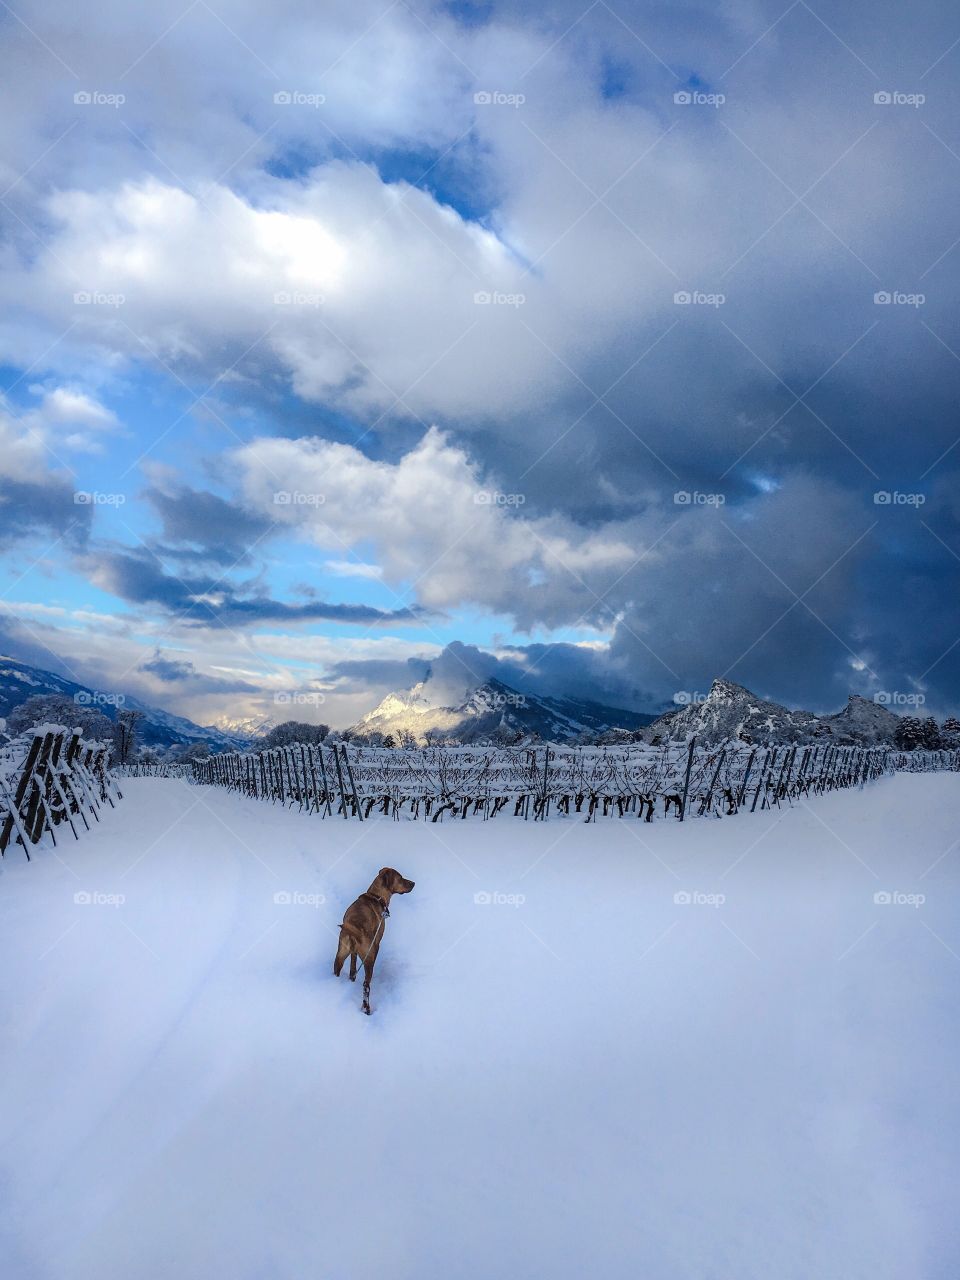 dog in winter landscape, swiss alps.